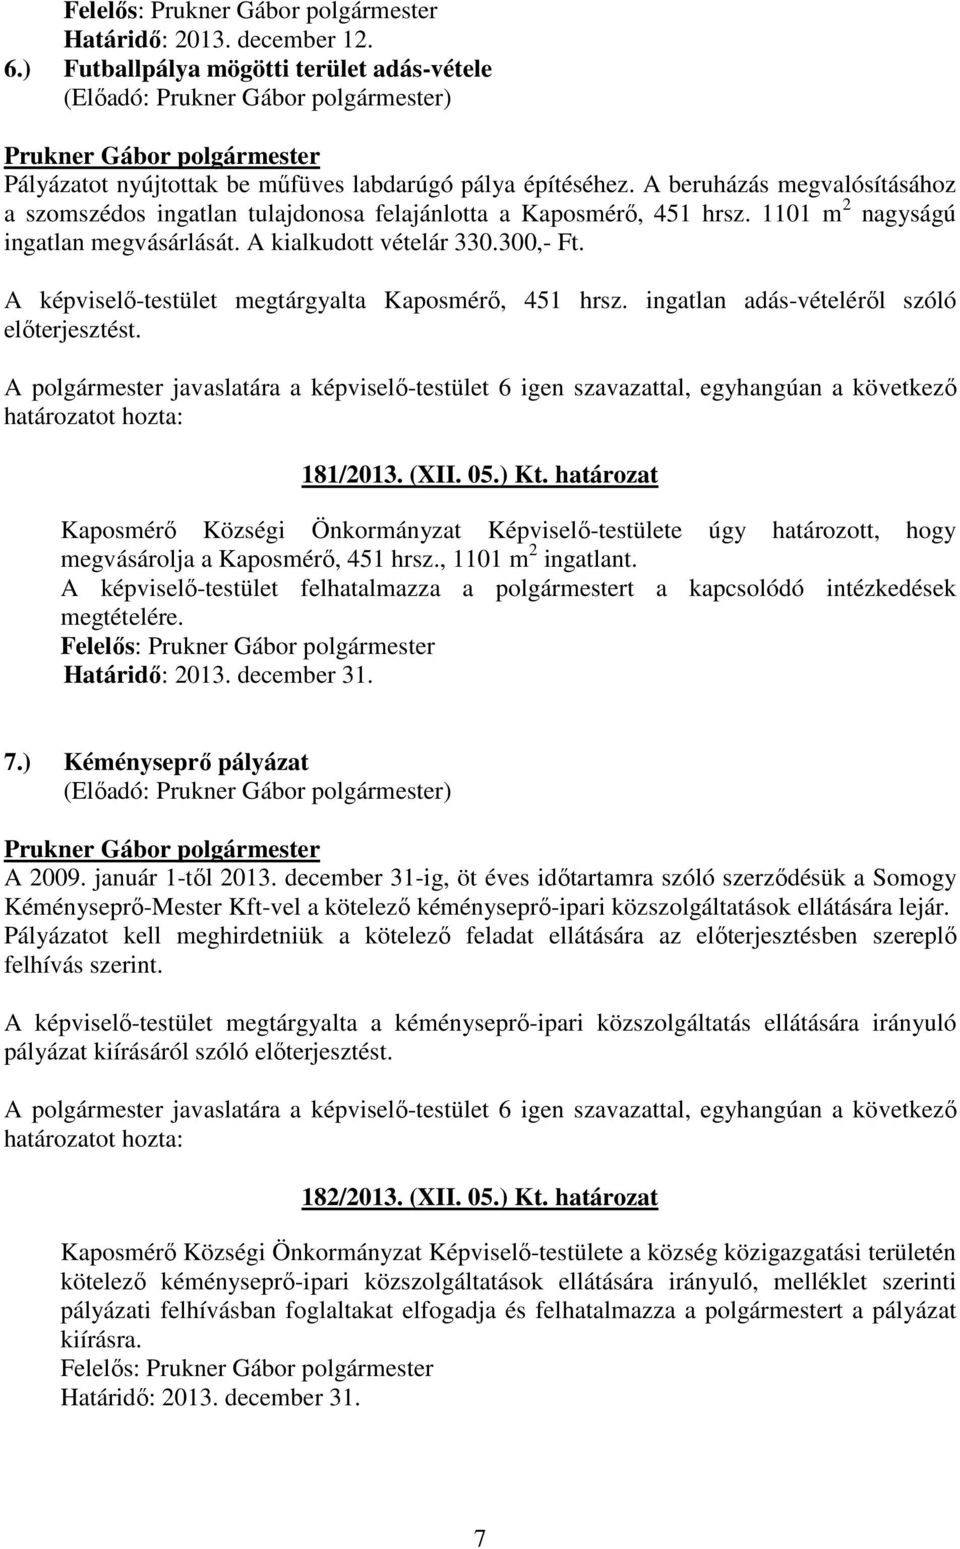 A képviselı-testület megtárgyalta Kaposmérı, 451 hrsz. ingatlan adás-vételérıl szóló elıterjesztést. 181/2013. (XII. 05.) Kt.